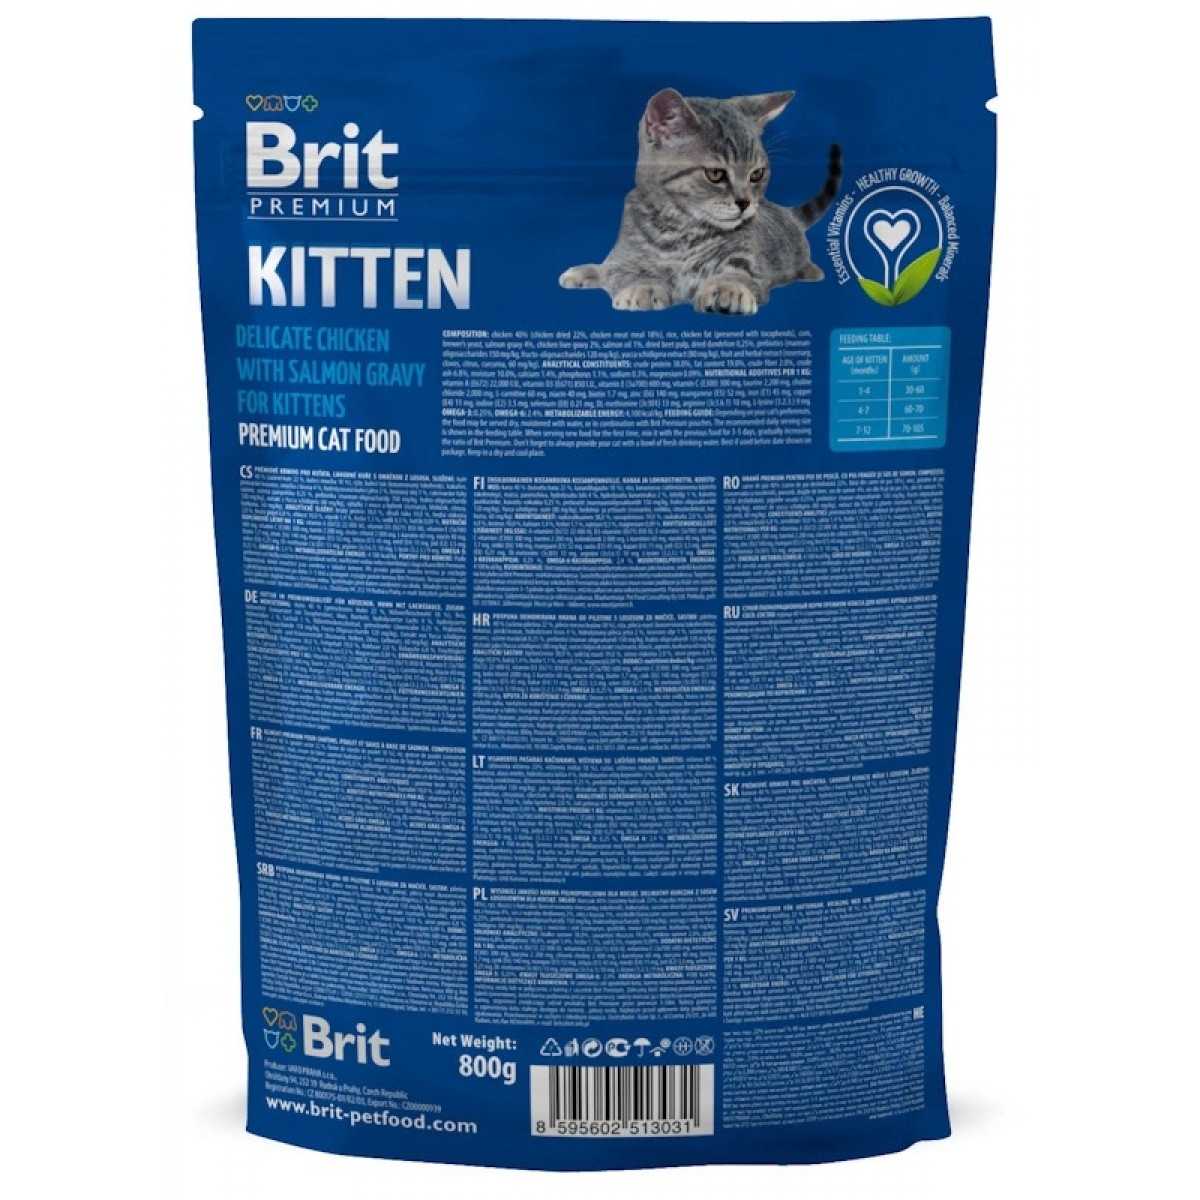 Актуальные цены Узнайте о преимуществах и недостатках корма для кошек Brit и собственном отзыве Оставьте свой отзыв о данном продукте